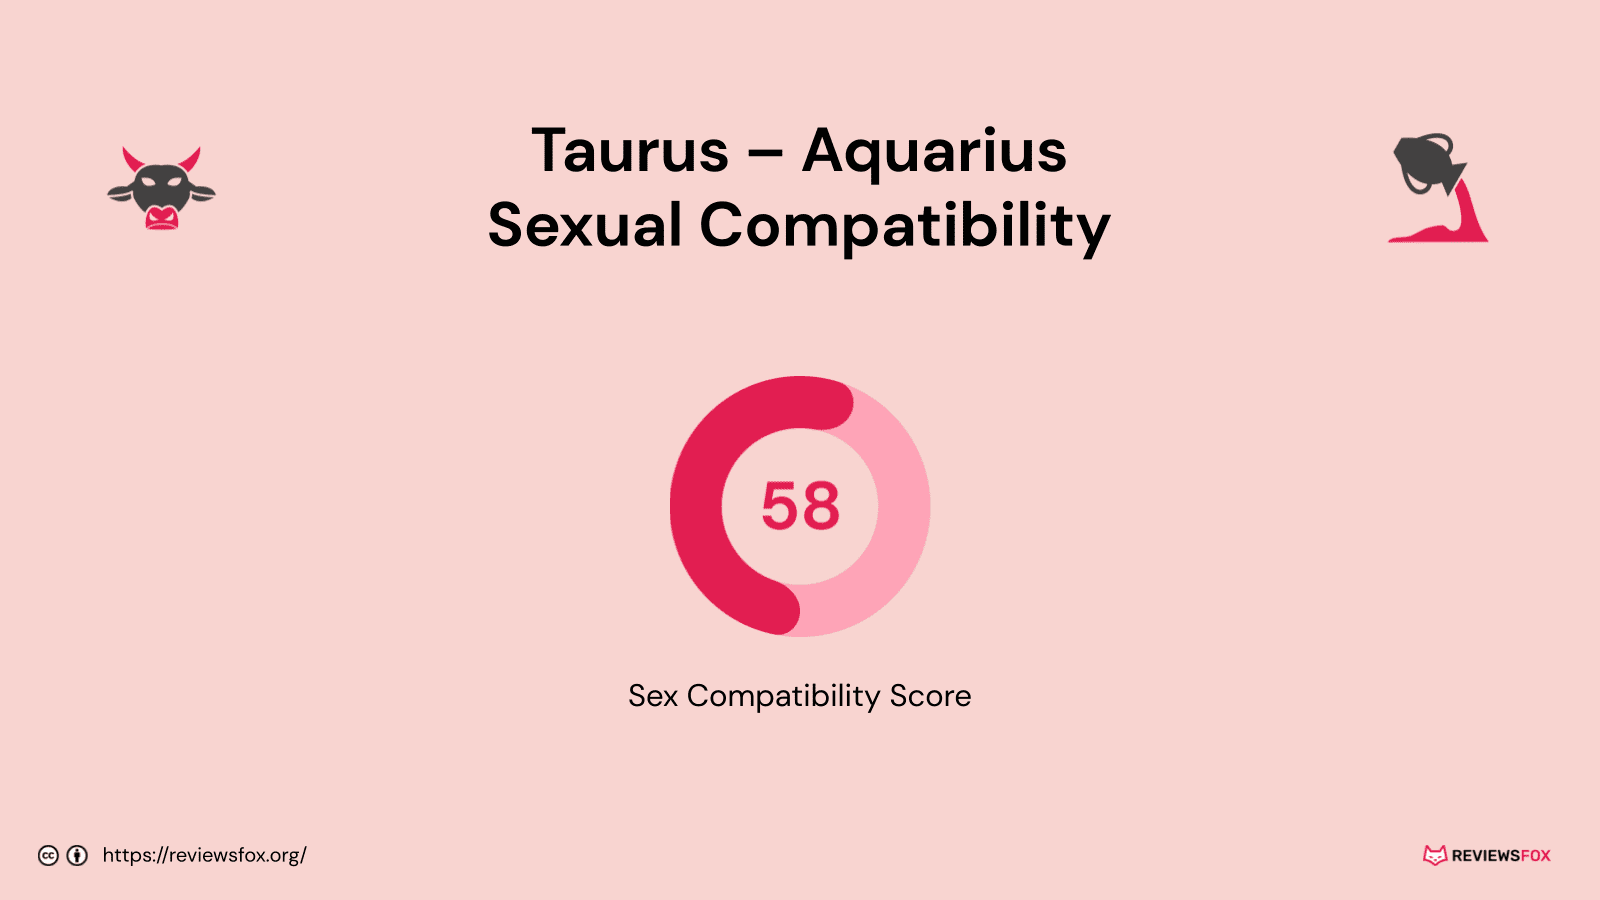 Taurus and Aquarius sexual compatibility